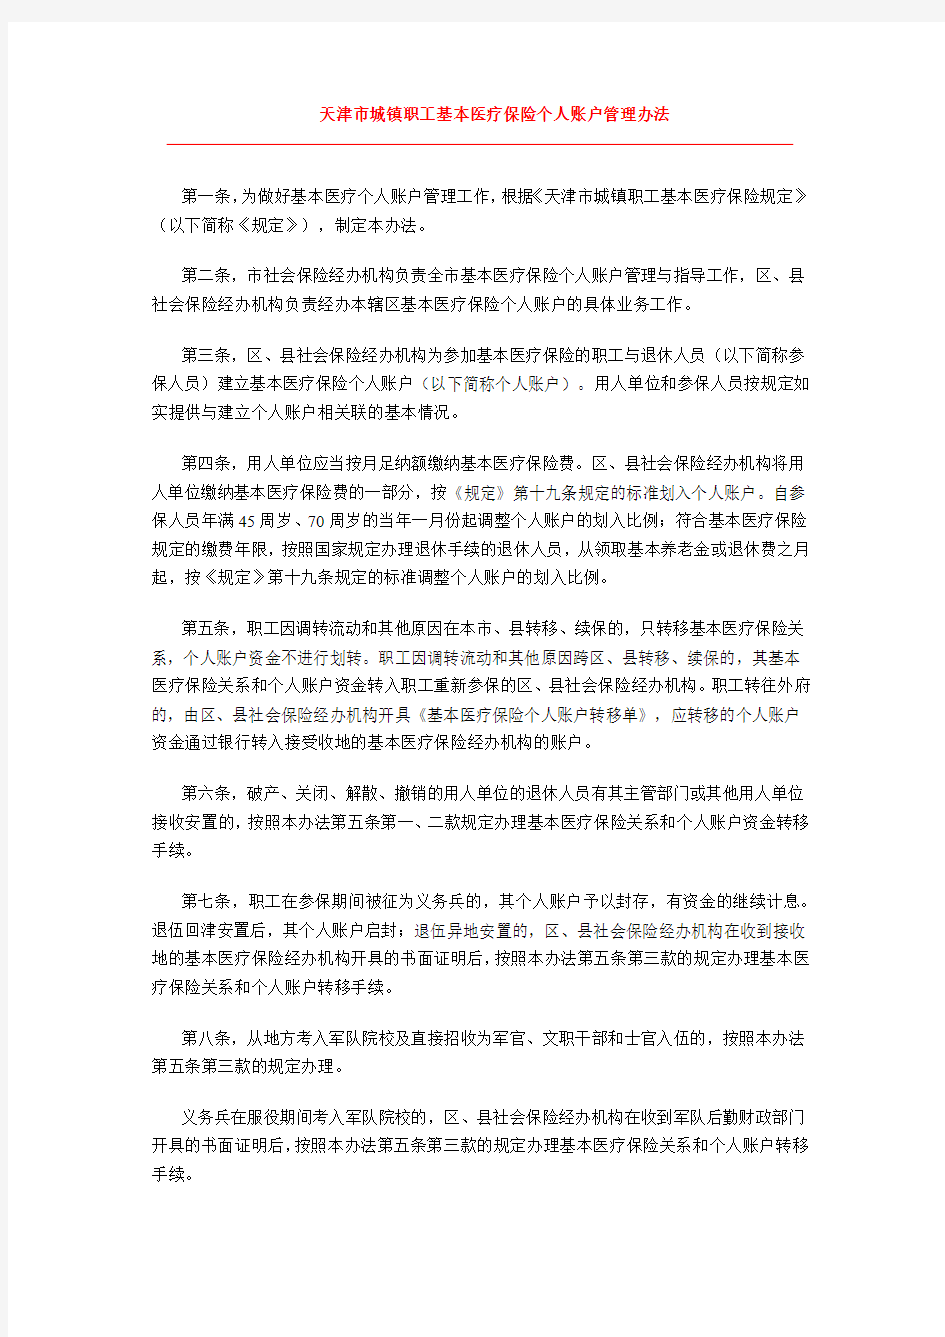 天津市城镇职工基本医疗保险个人账户管理办法